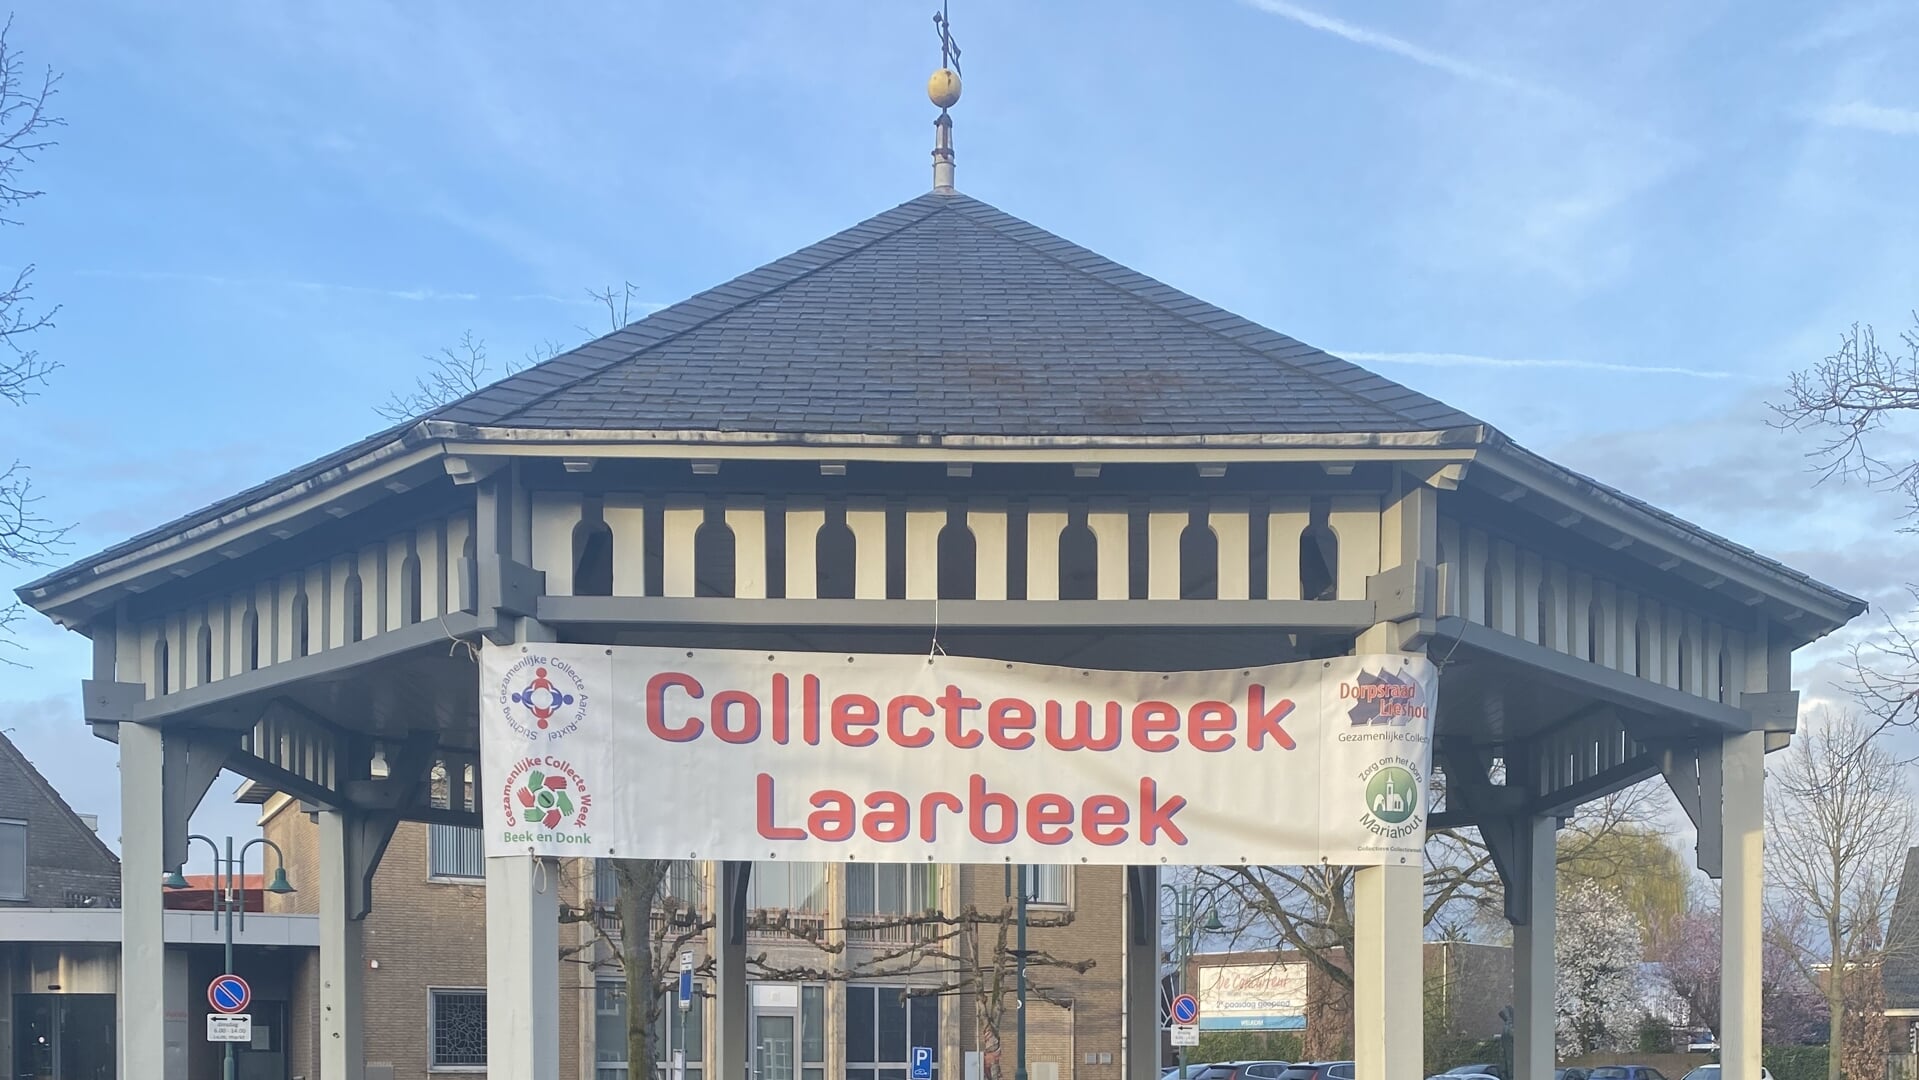 De gezamenlijke collecteweek is er weer. Ook in Lieshout is dat duidelijk te zien.